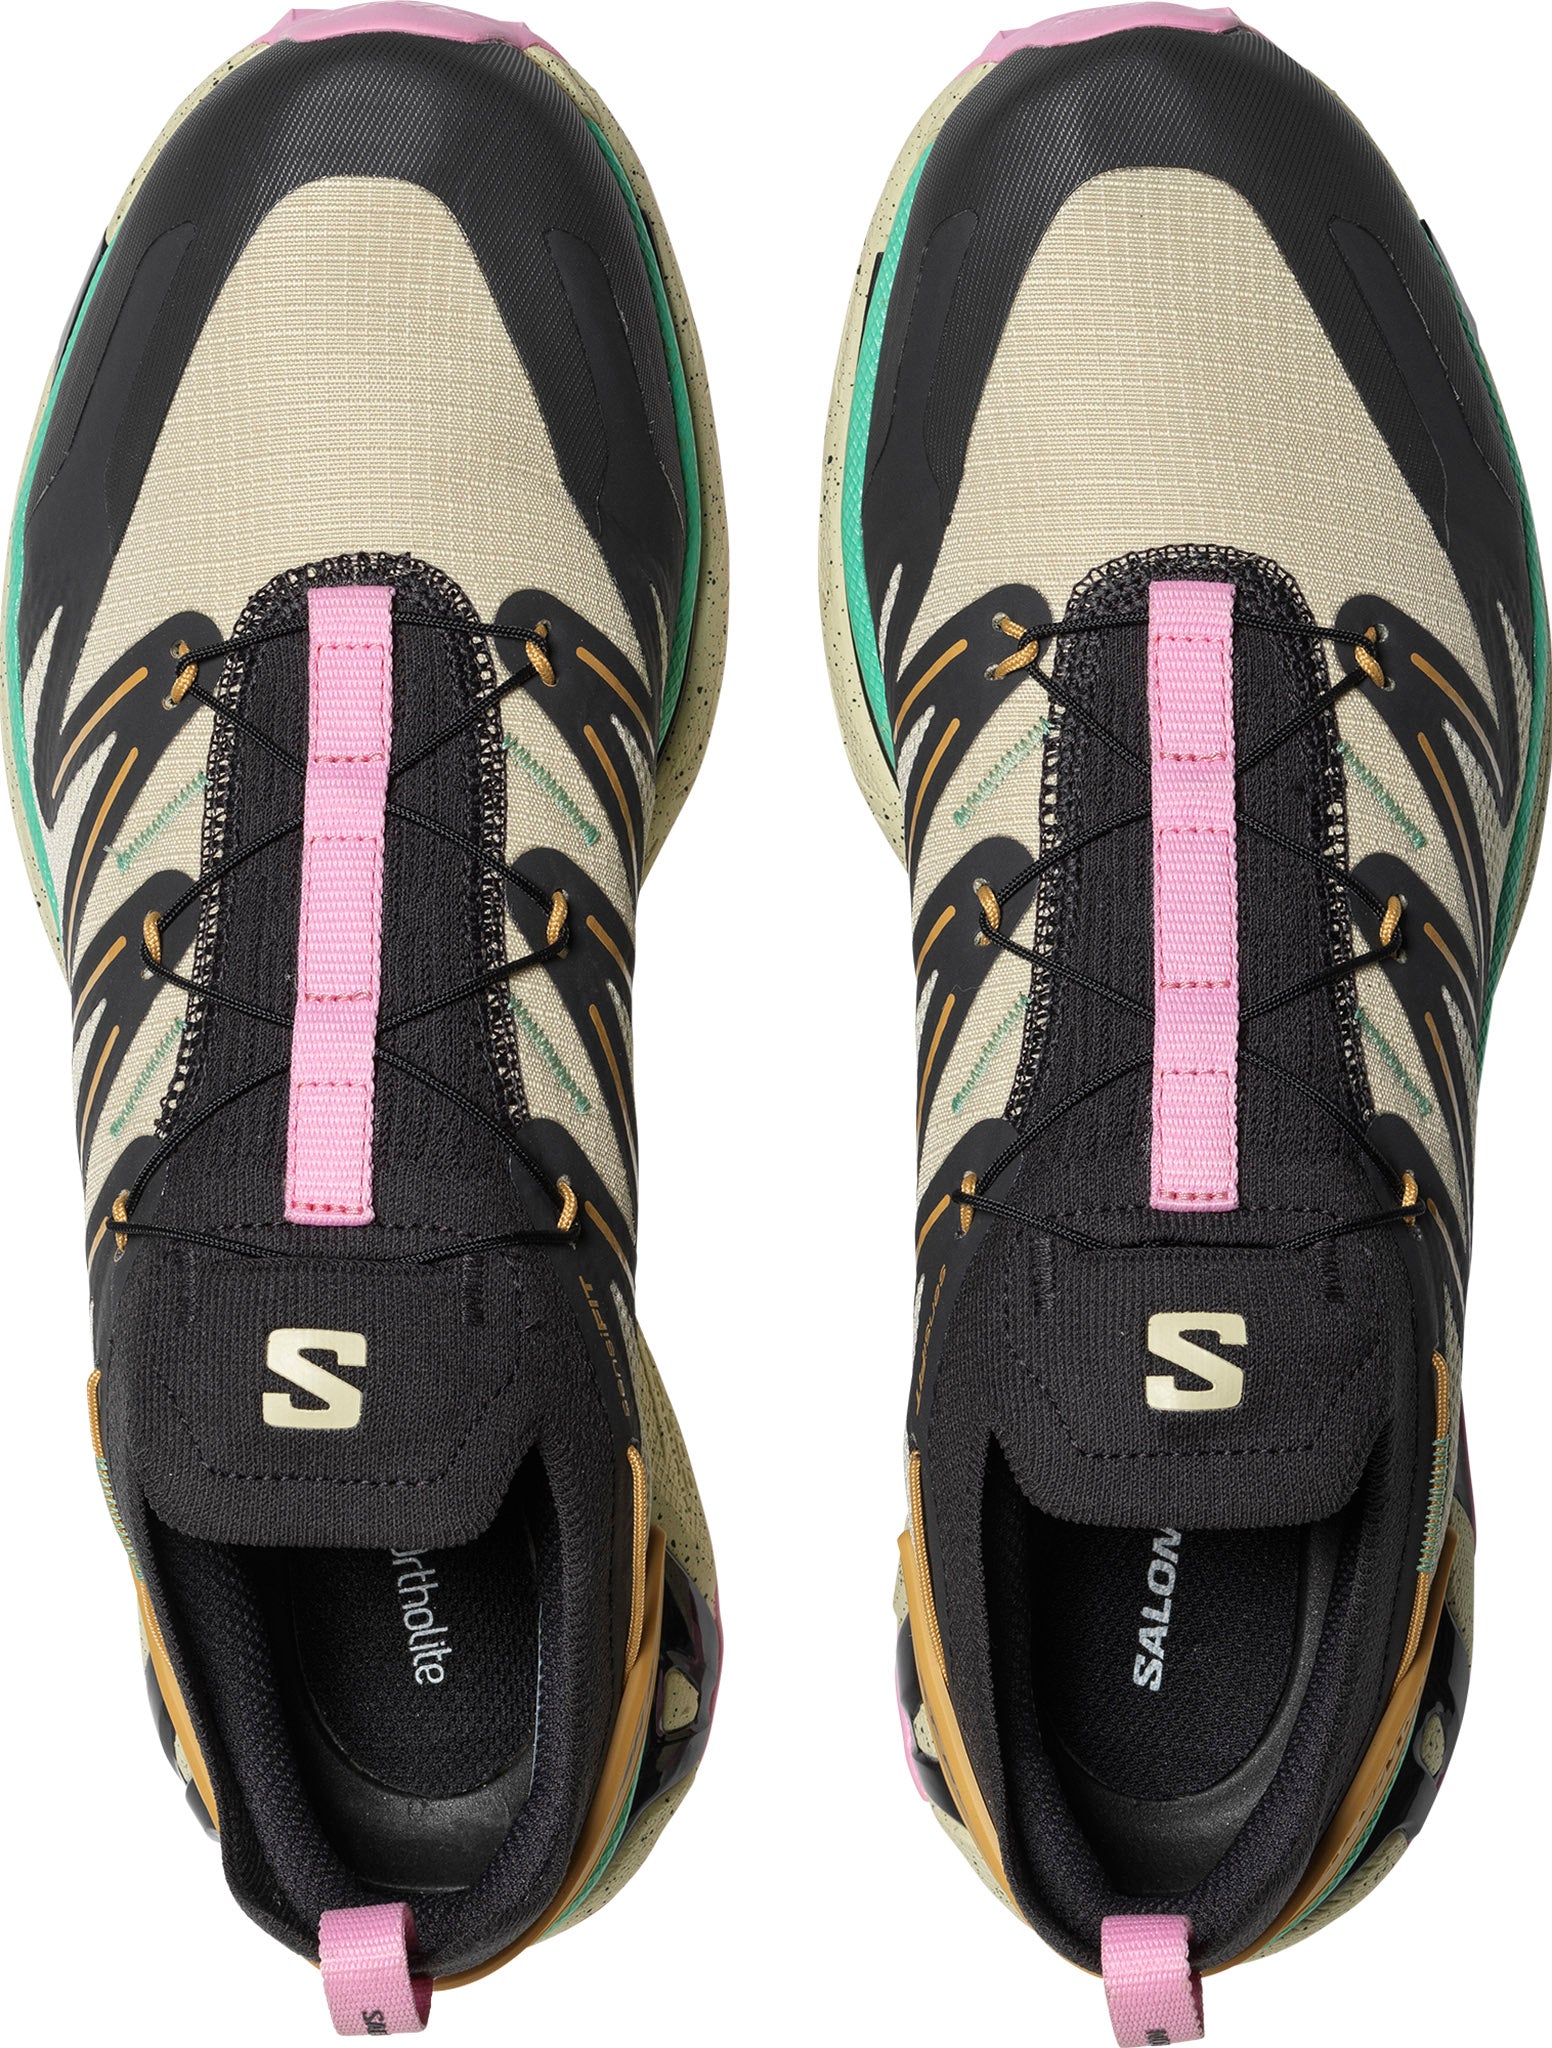 Salomon XT-Rush 2 Sportstyle Shoes - Unisex | The Last Hunt